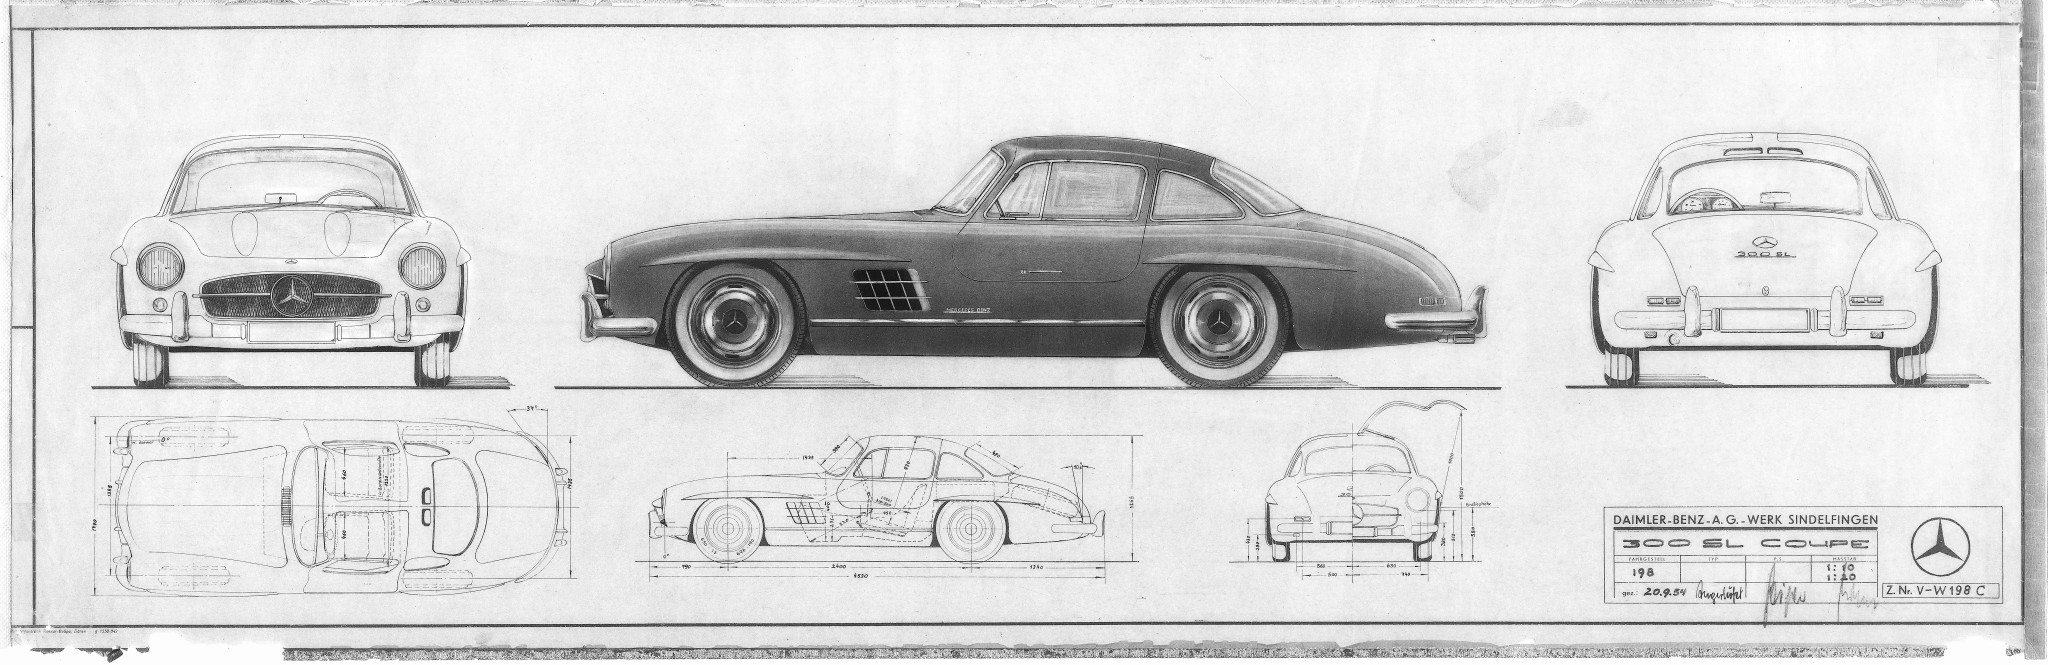 Mercedes-Benz 300SL Blueprints and Design Sketches